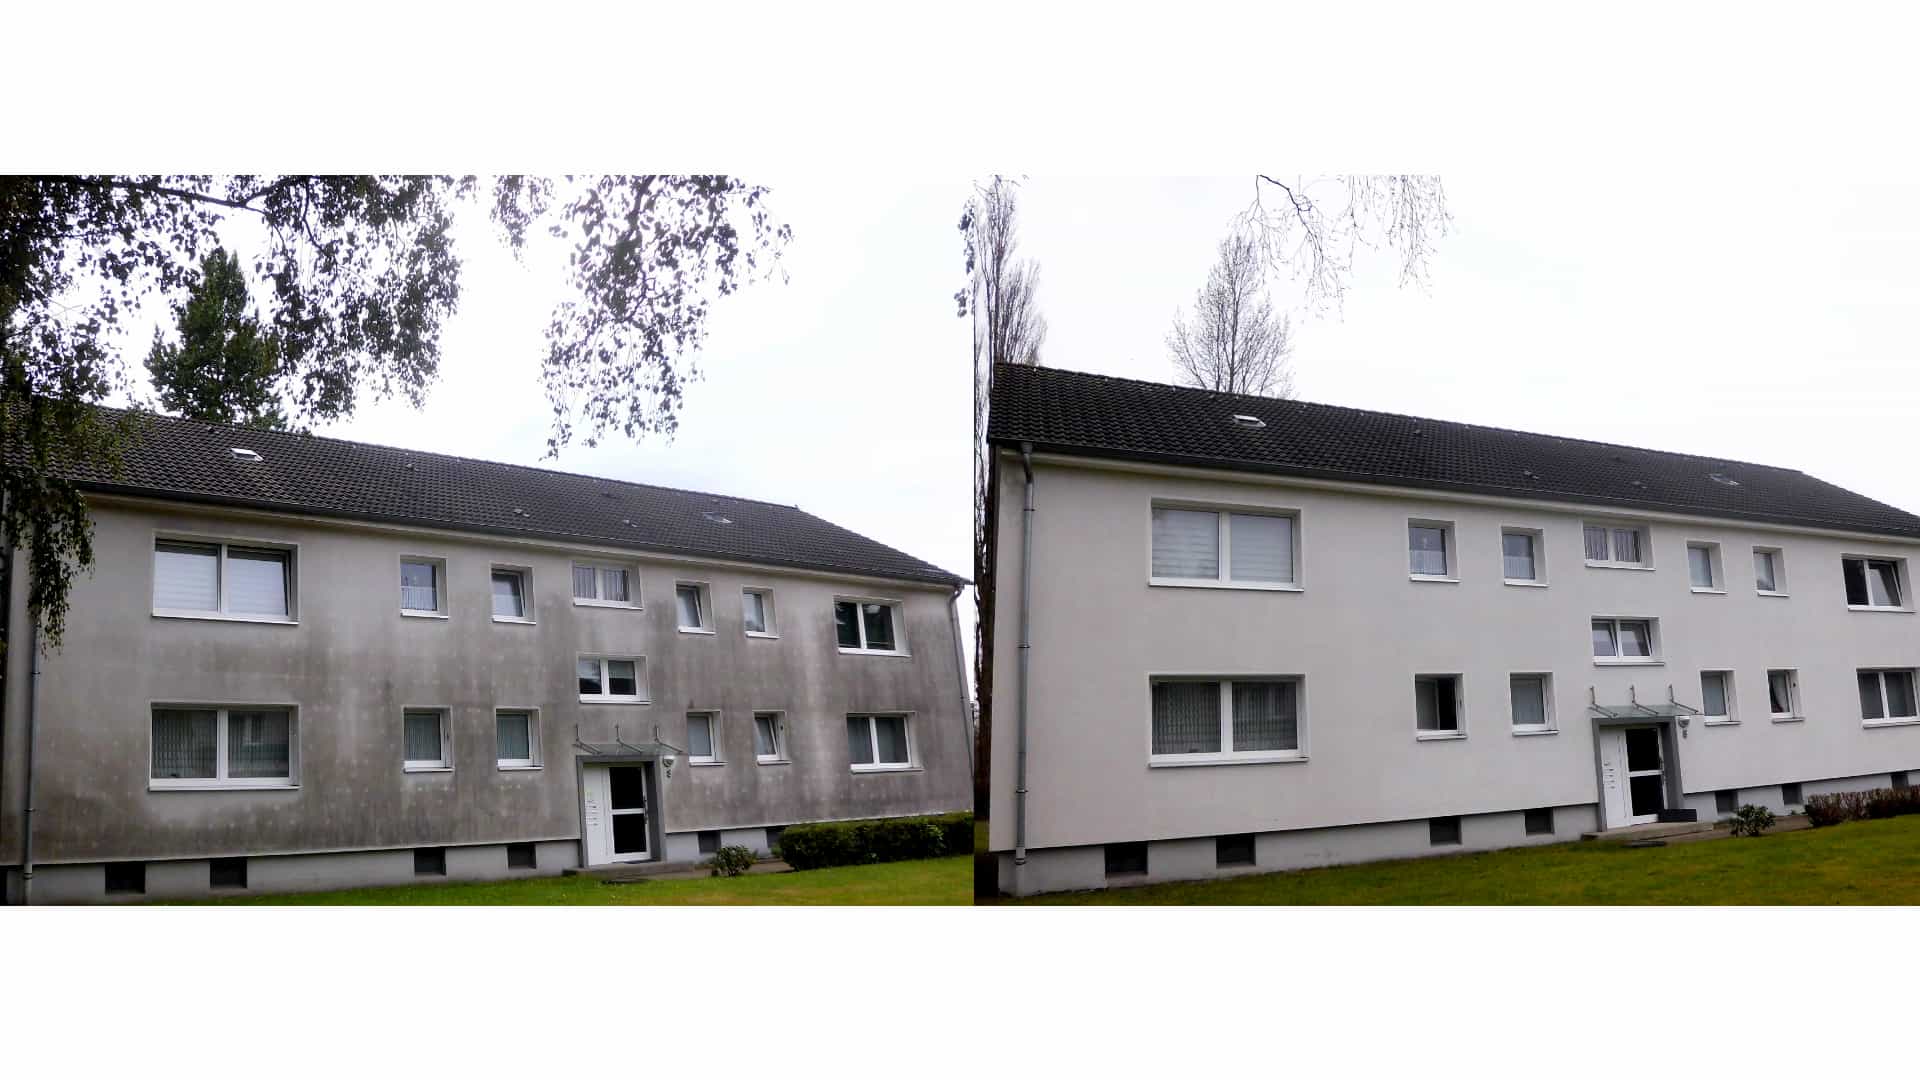 Fassadenreinigung - Vorher / Nachher Vergleich eines Hauses